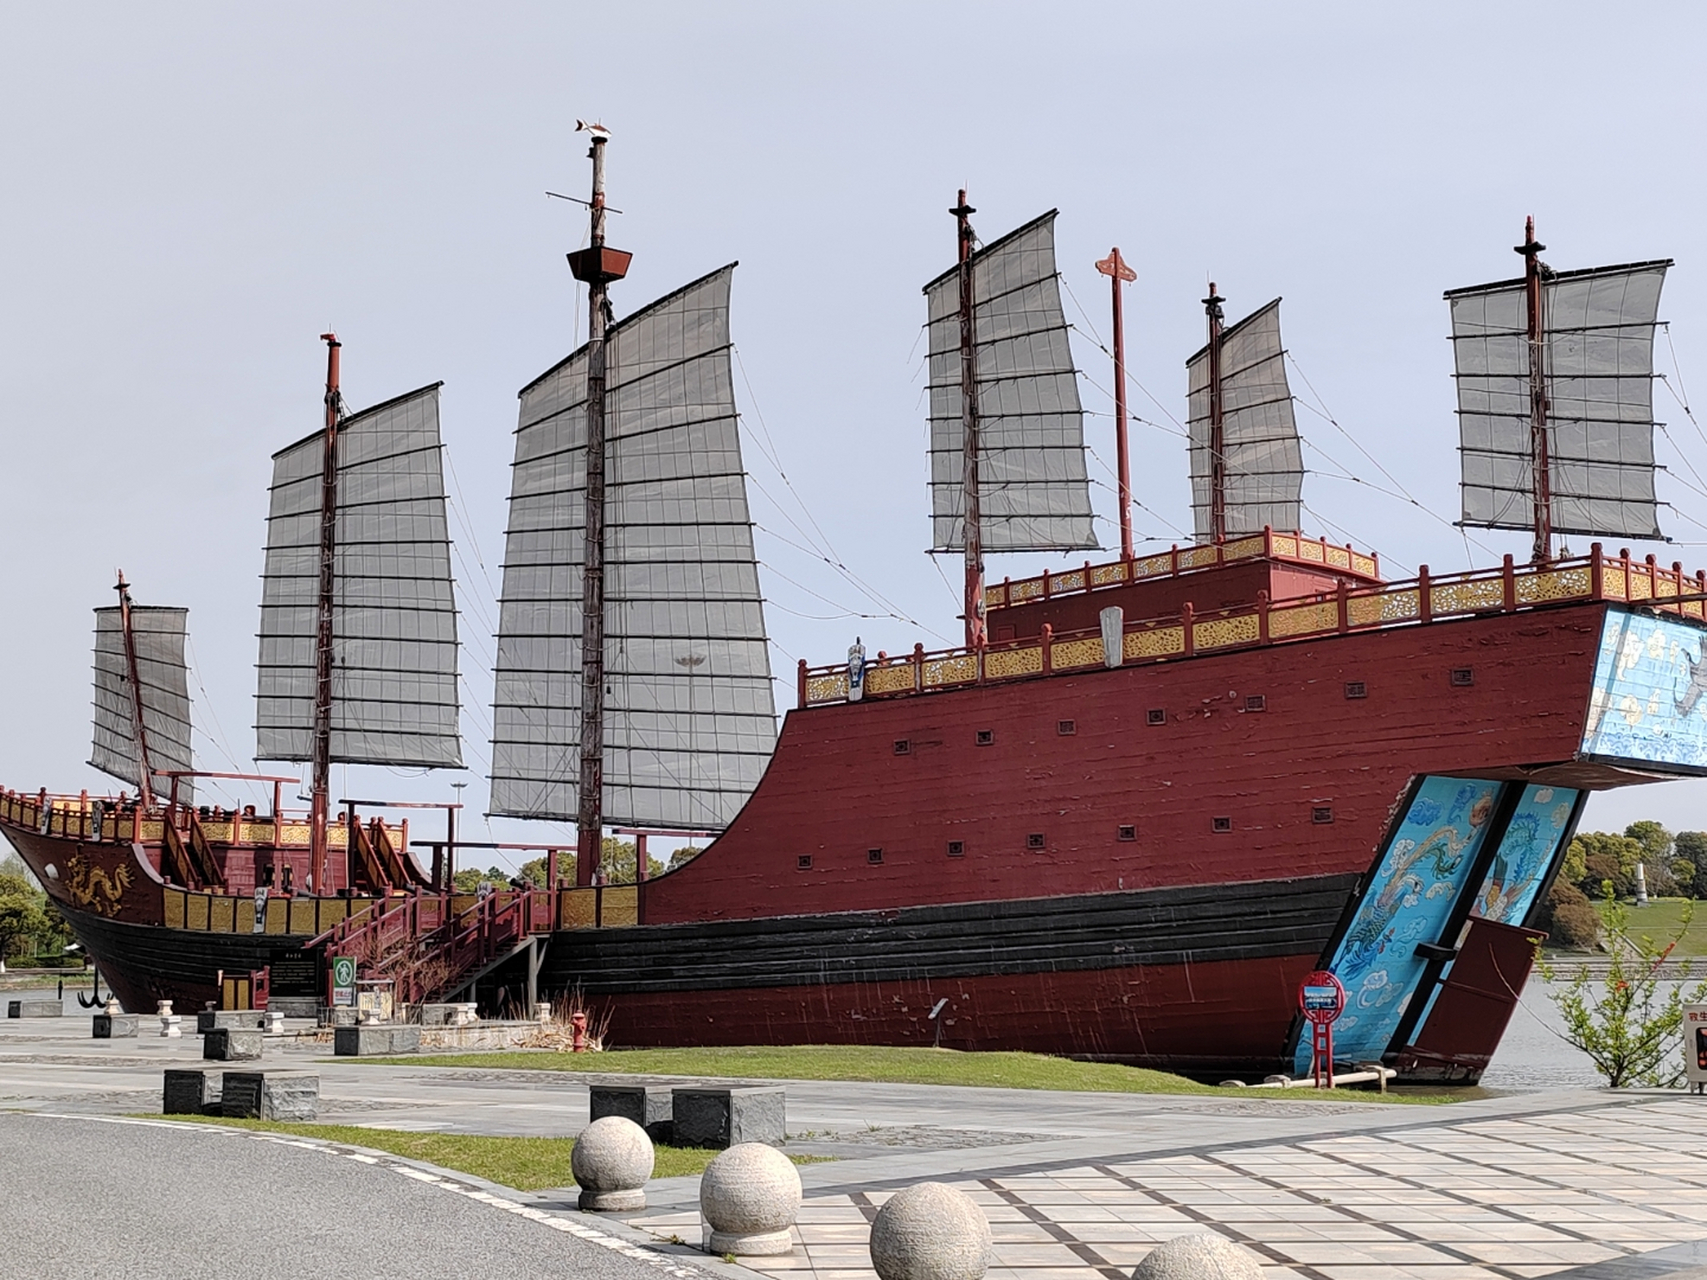 郑和下西洋的大宝船,明朝之前,央央华夏,是世界仰慕的大天朝,七下西洋